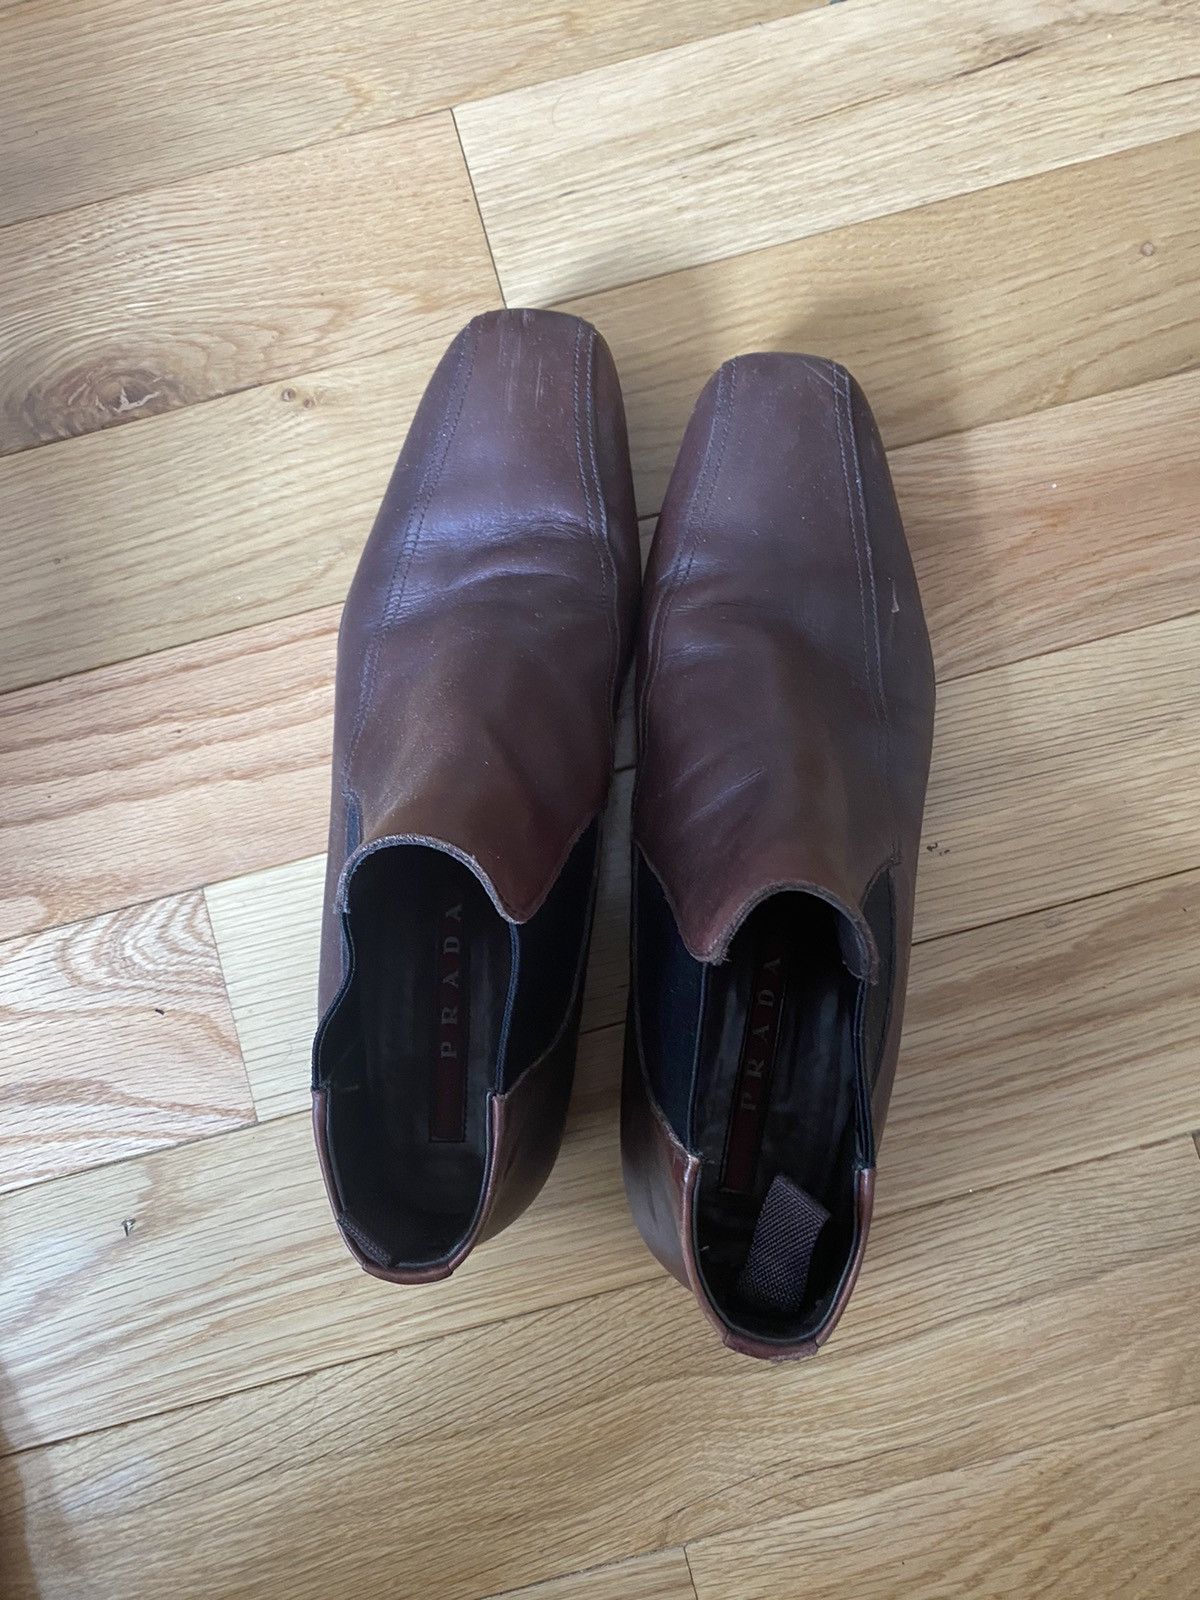 Prada Vintage Prada ankle boot Size US 7 / EU 40 - 3 Thumbnail